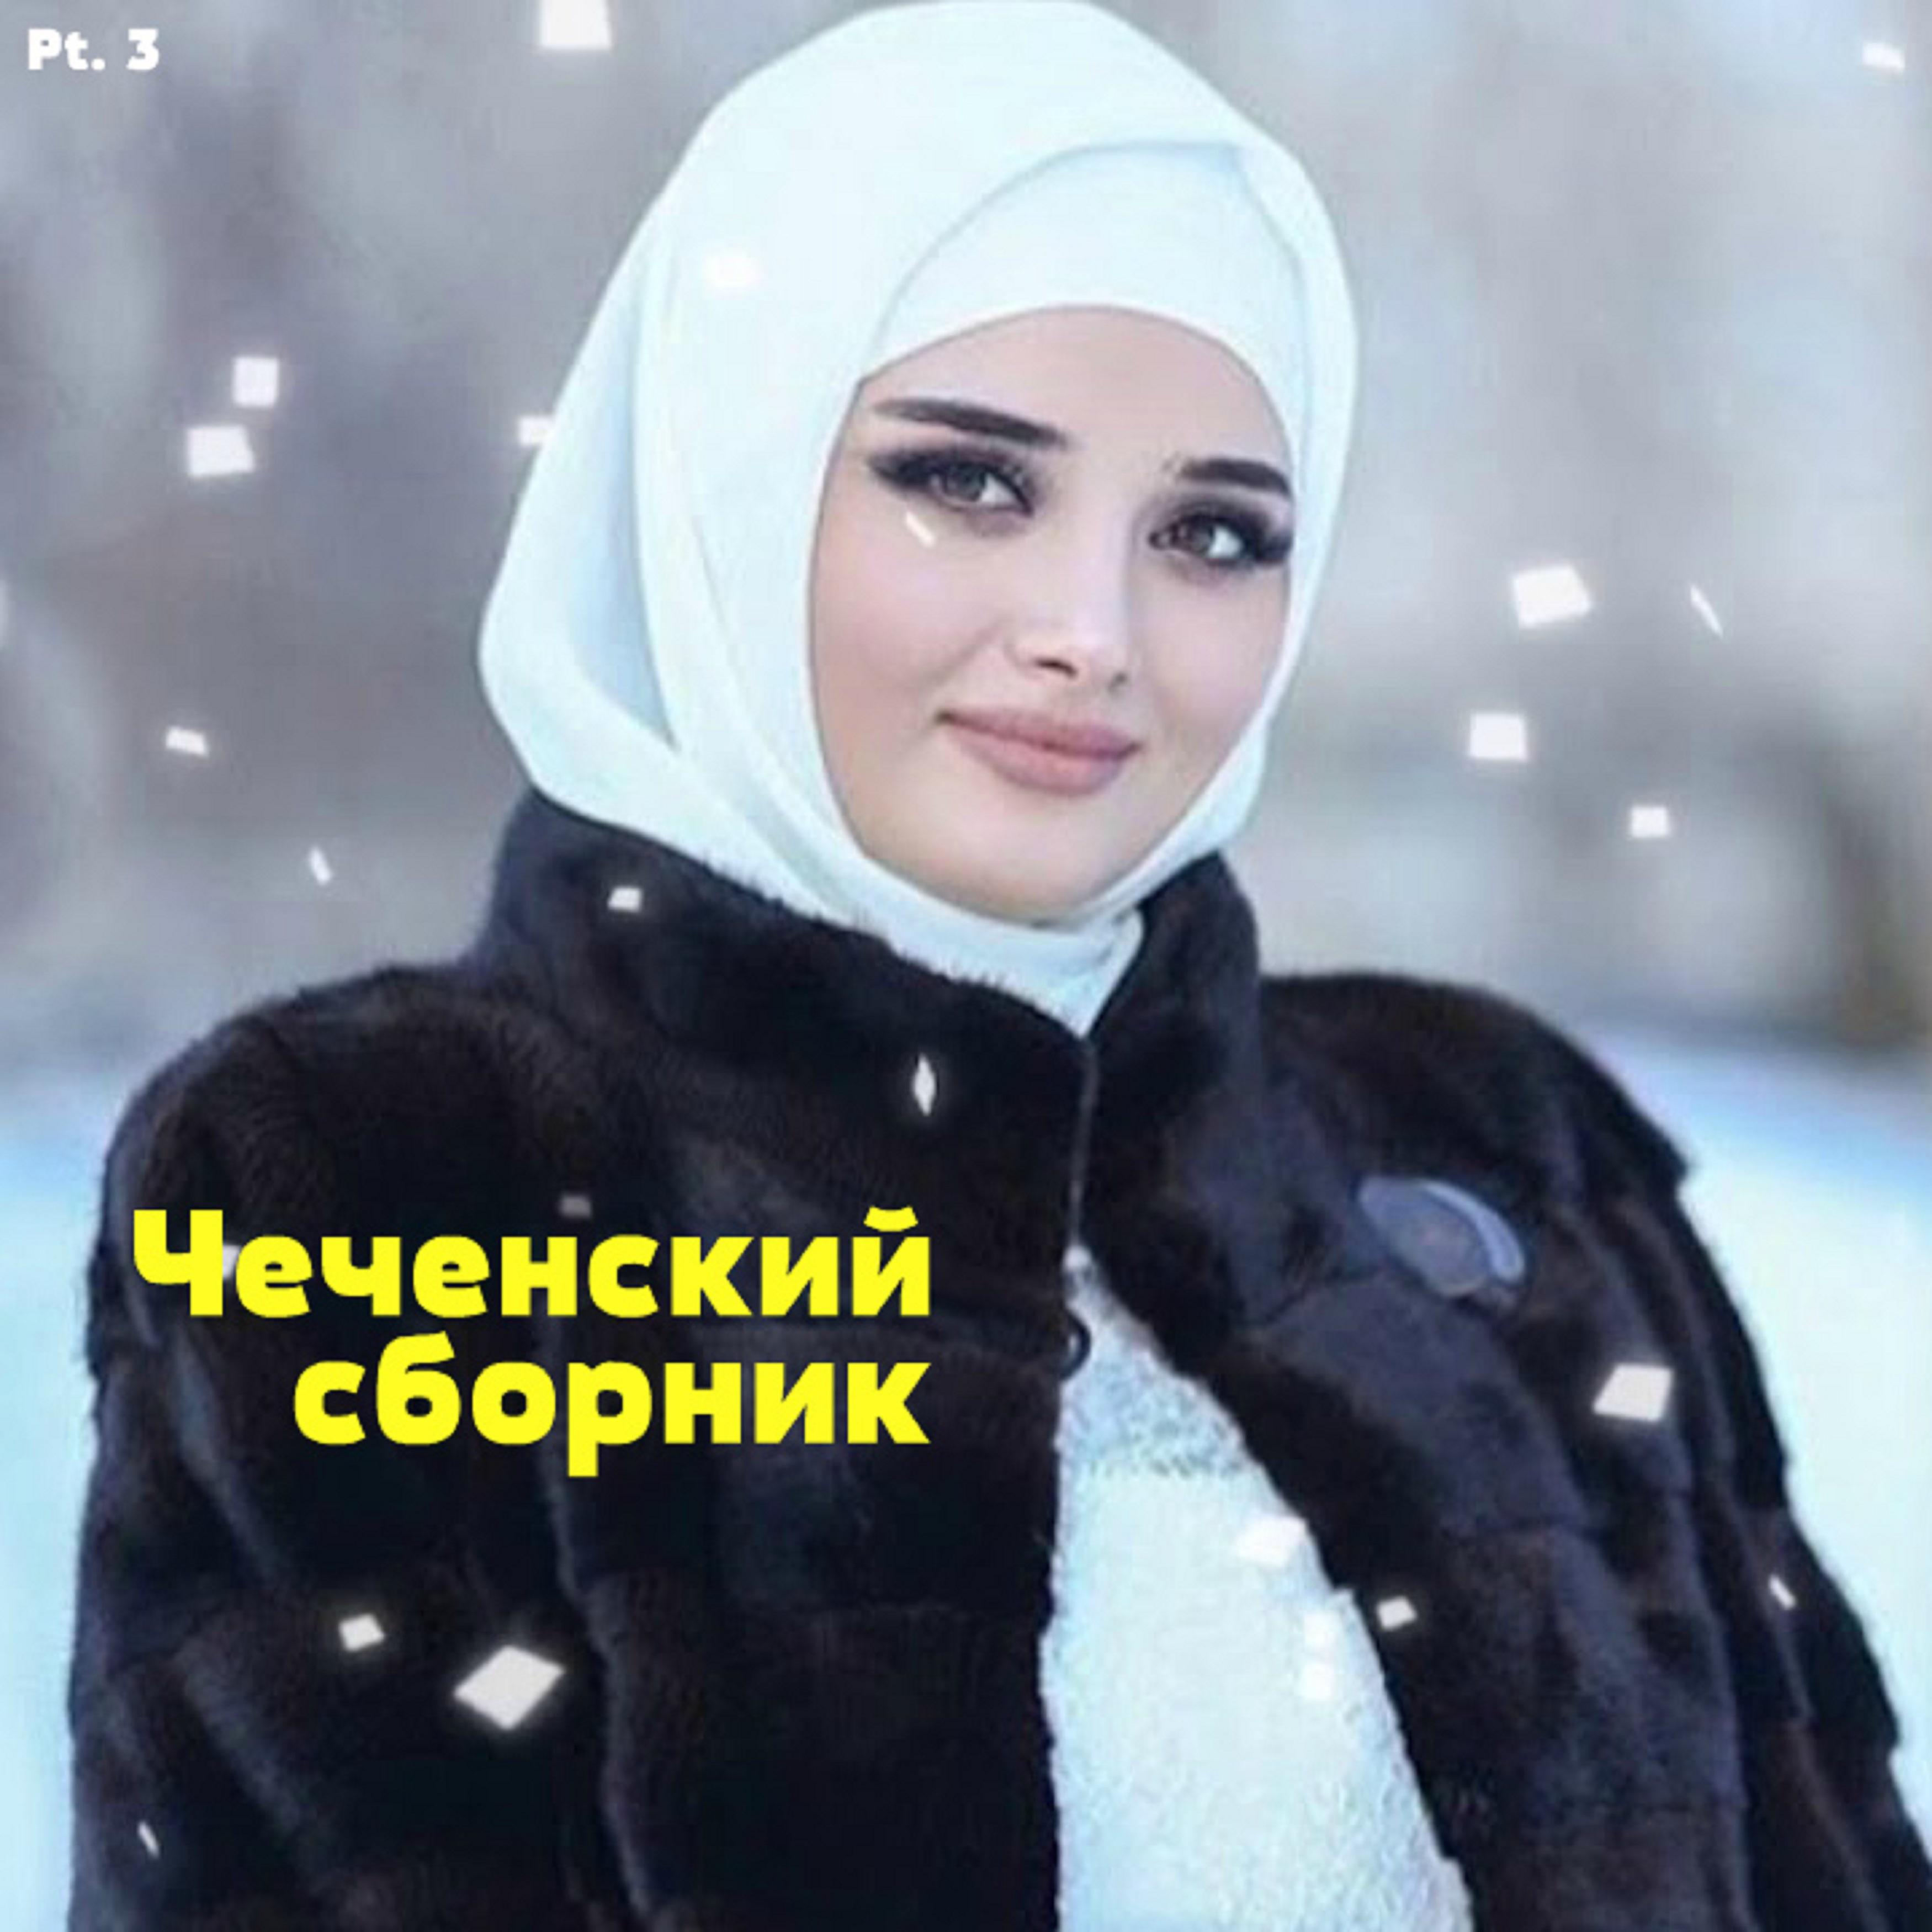 Постер альбома Чеченский сборник, Pt.3